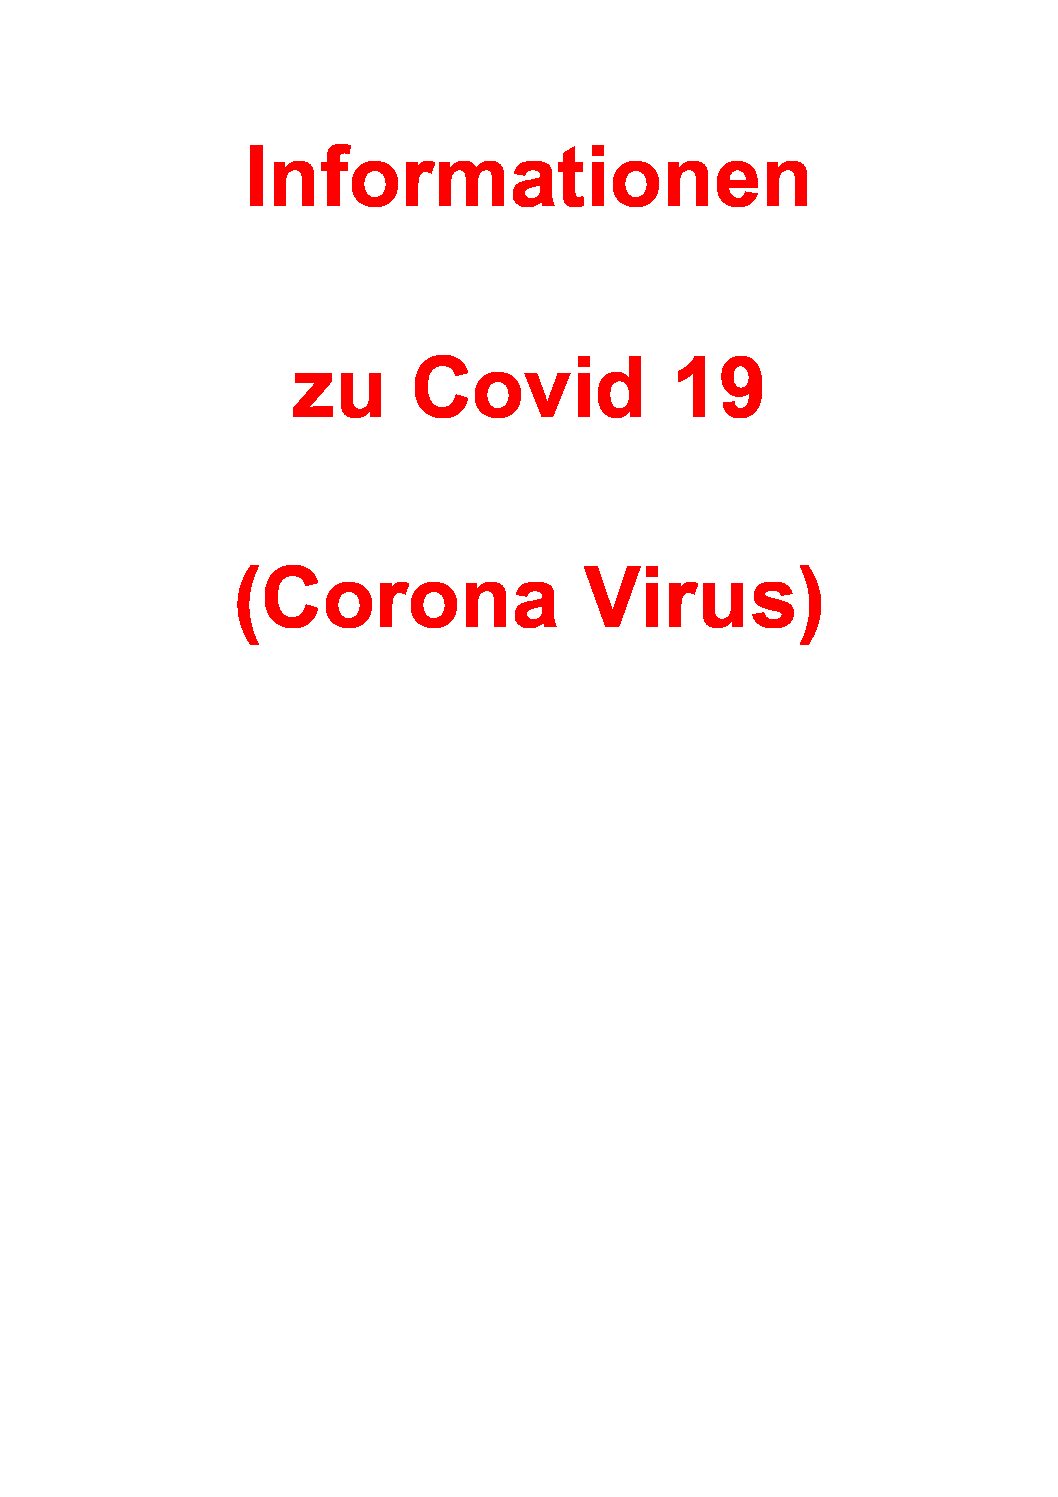 Informationen zu Covid 19